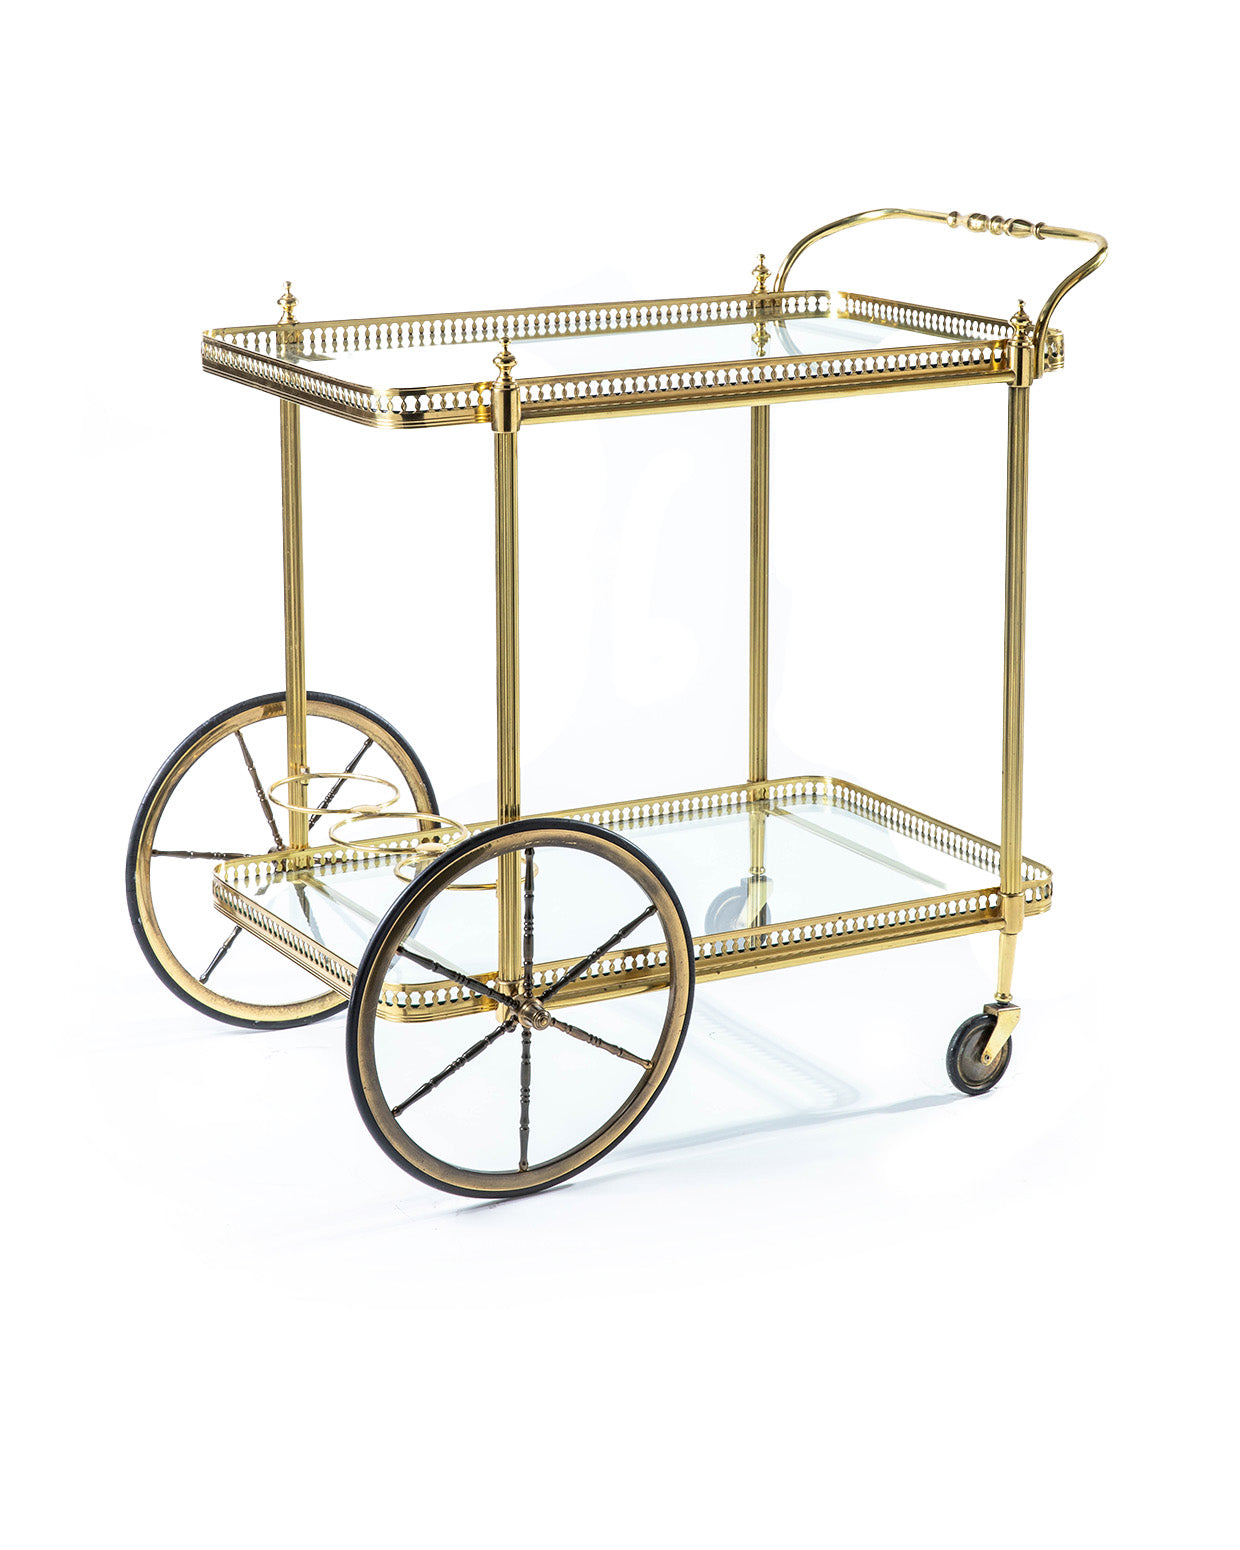 Products Carrello modello Galleria con ruote da carrozza - 1950 - Gold brass Bar Cart with Coach wheels